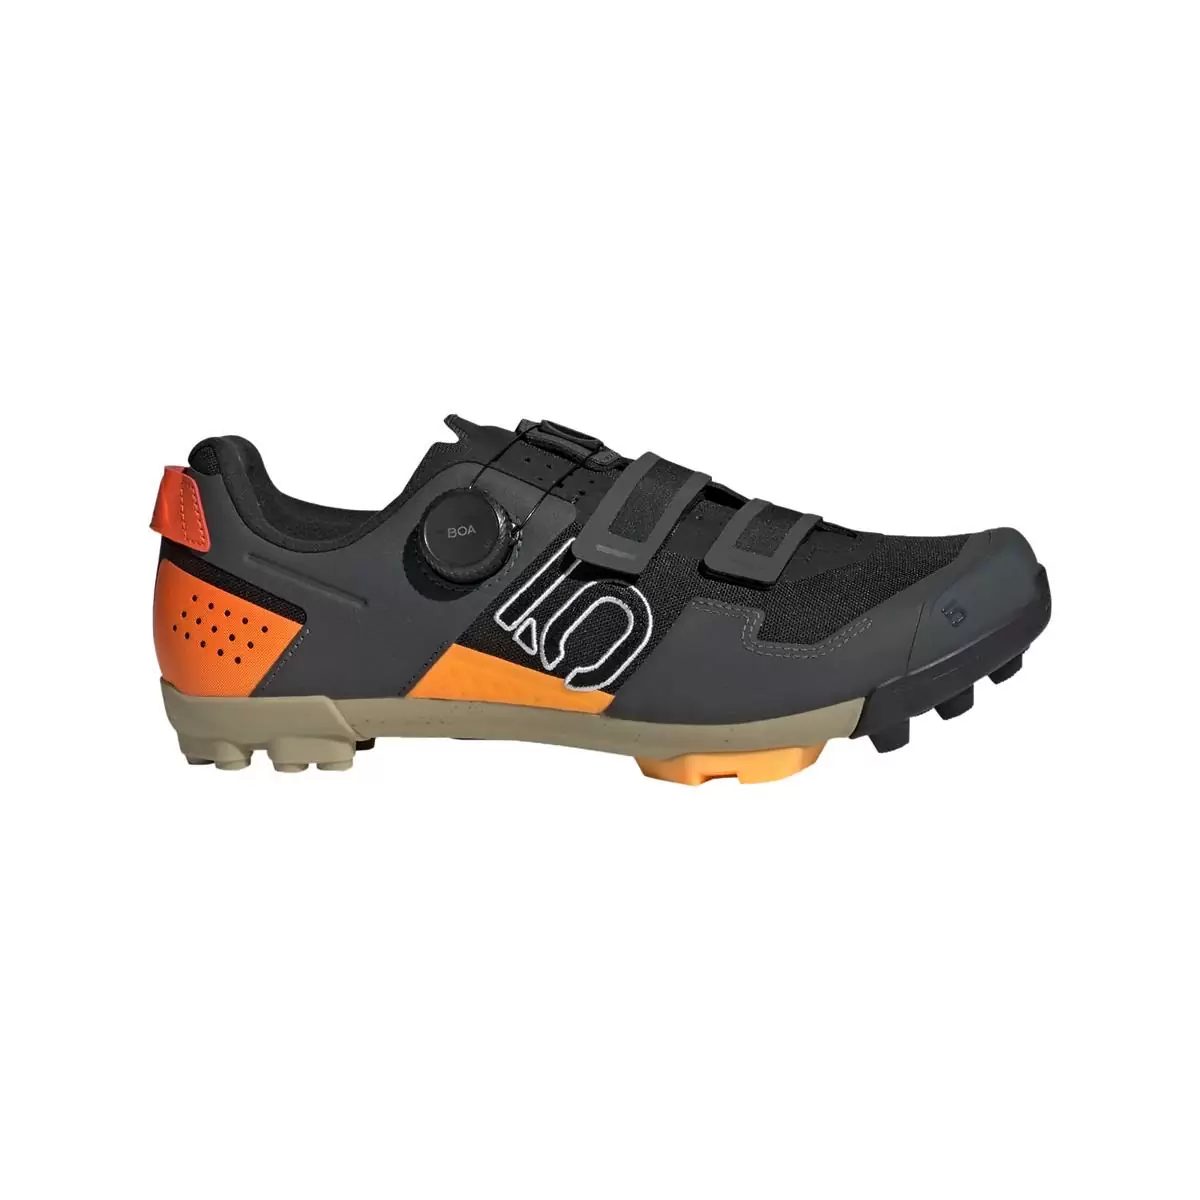 Chaussures VTT Clip 5.10 Kestrel Boa Noir/Orange Taille 42.5 - image